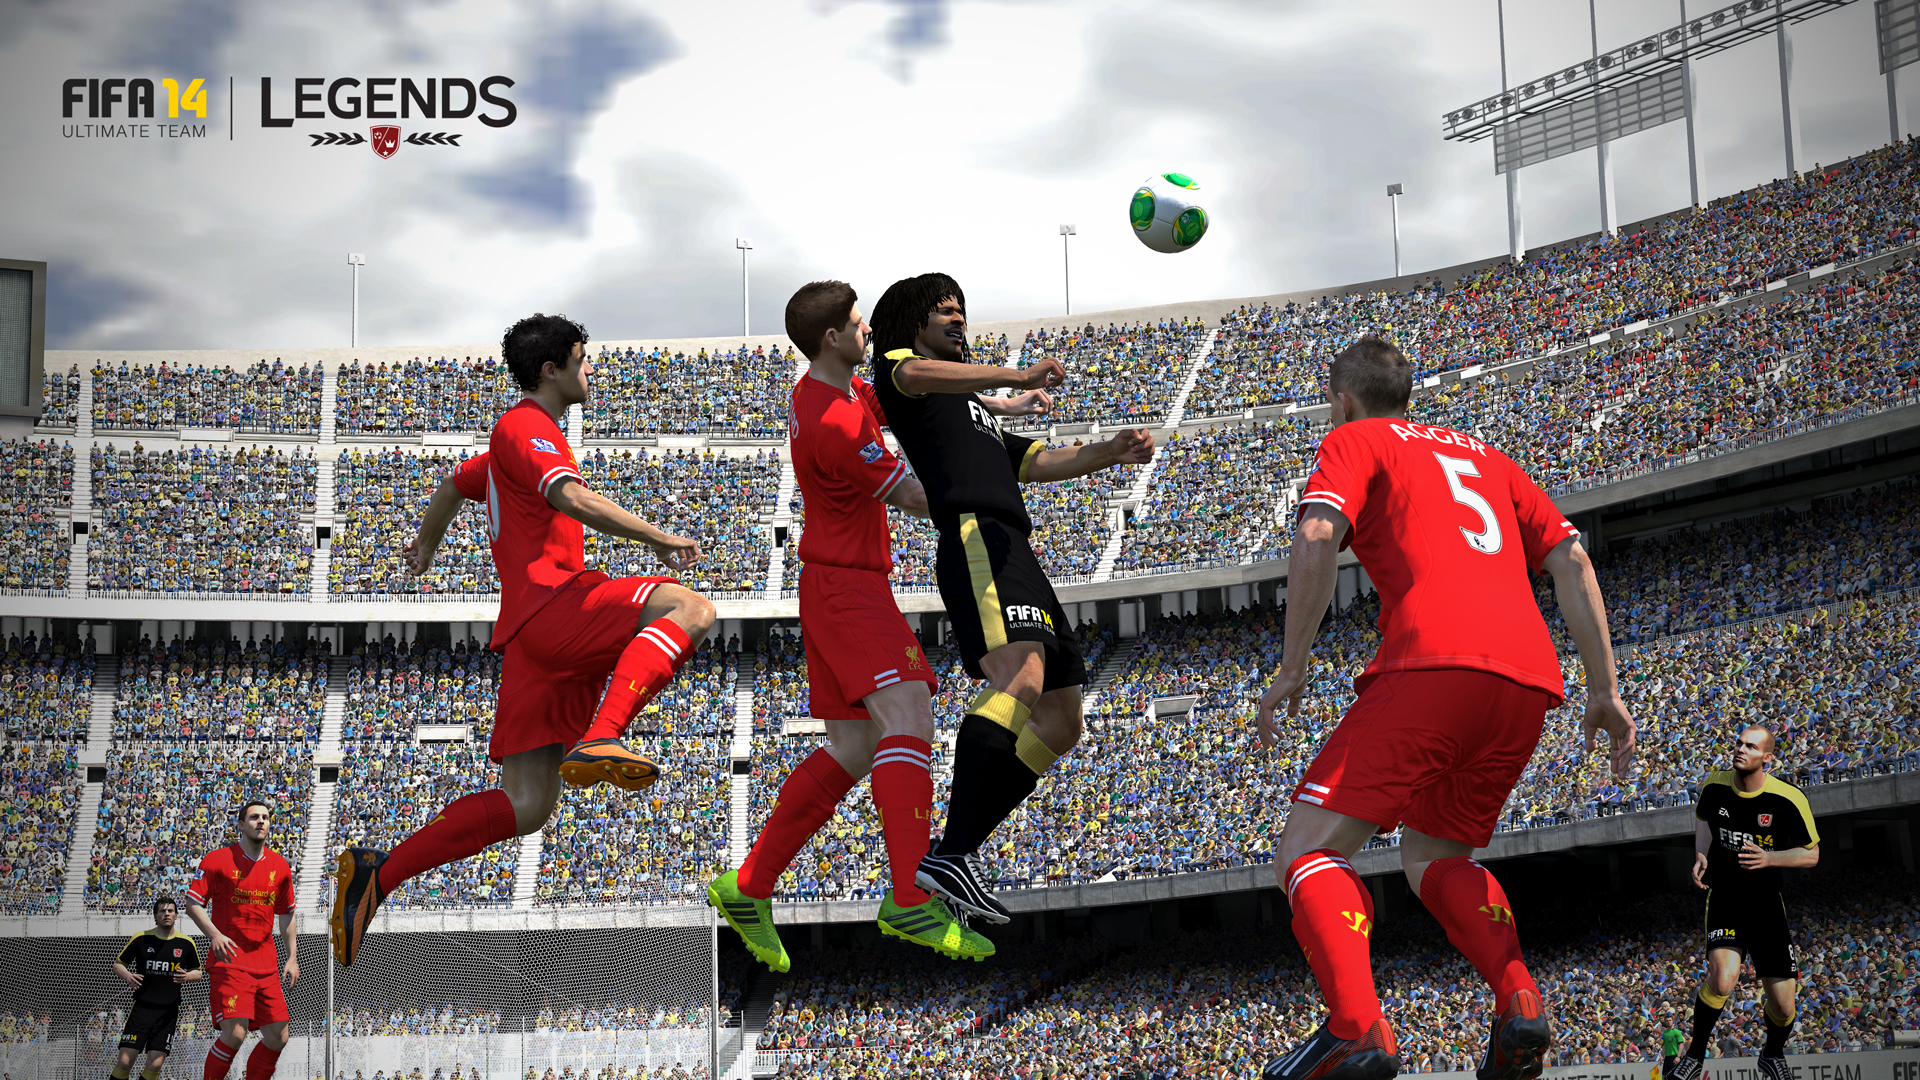 Fifa soccer. FIFA 14 Ultimate Team. Legends FIFA 14. ФИФА 14 фото. ФИФА 14 Скриншоты.